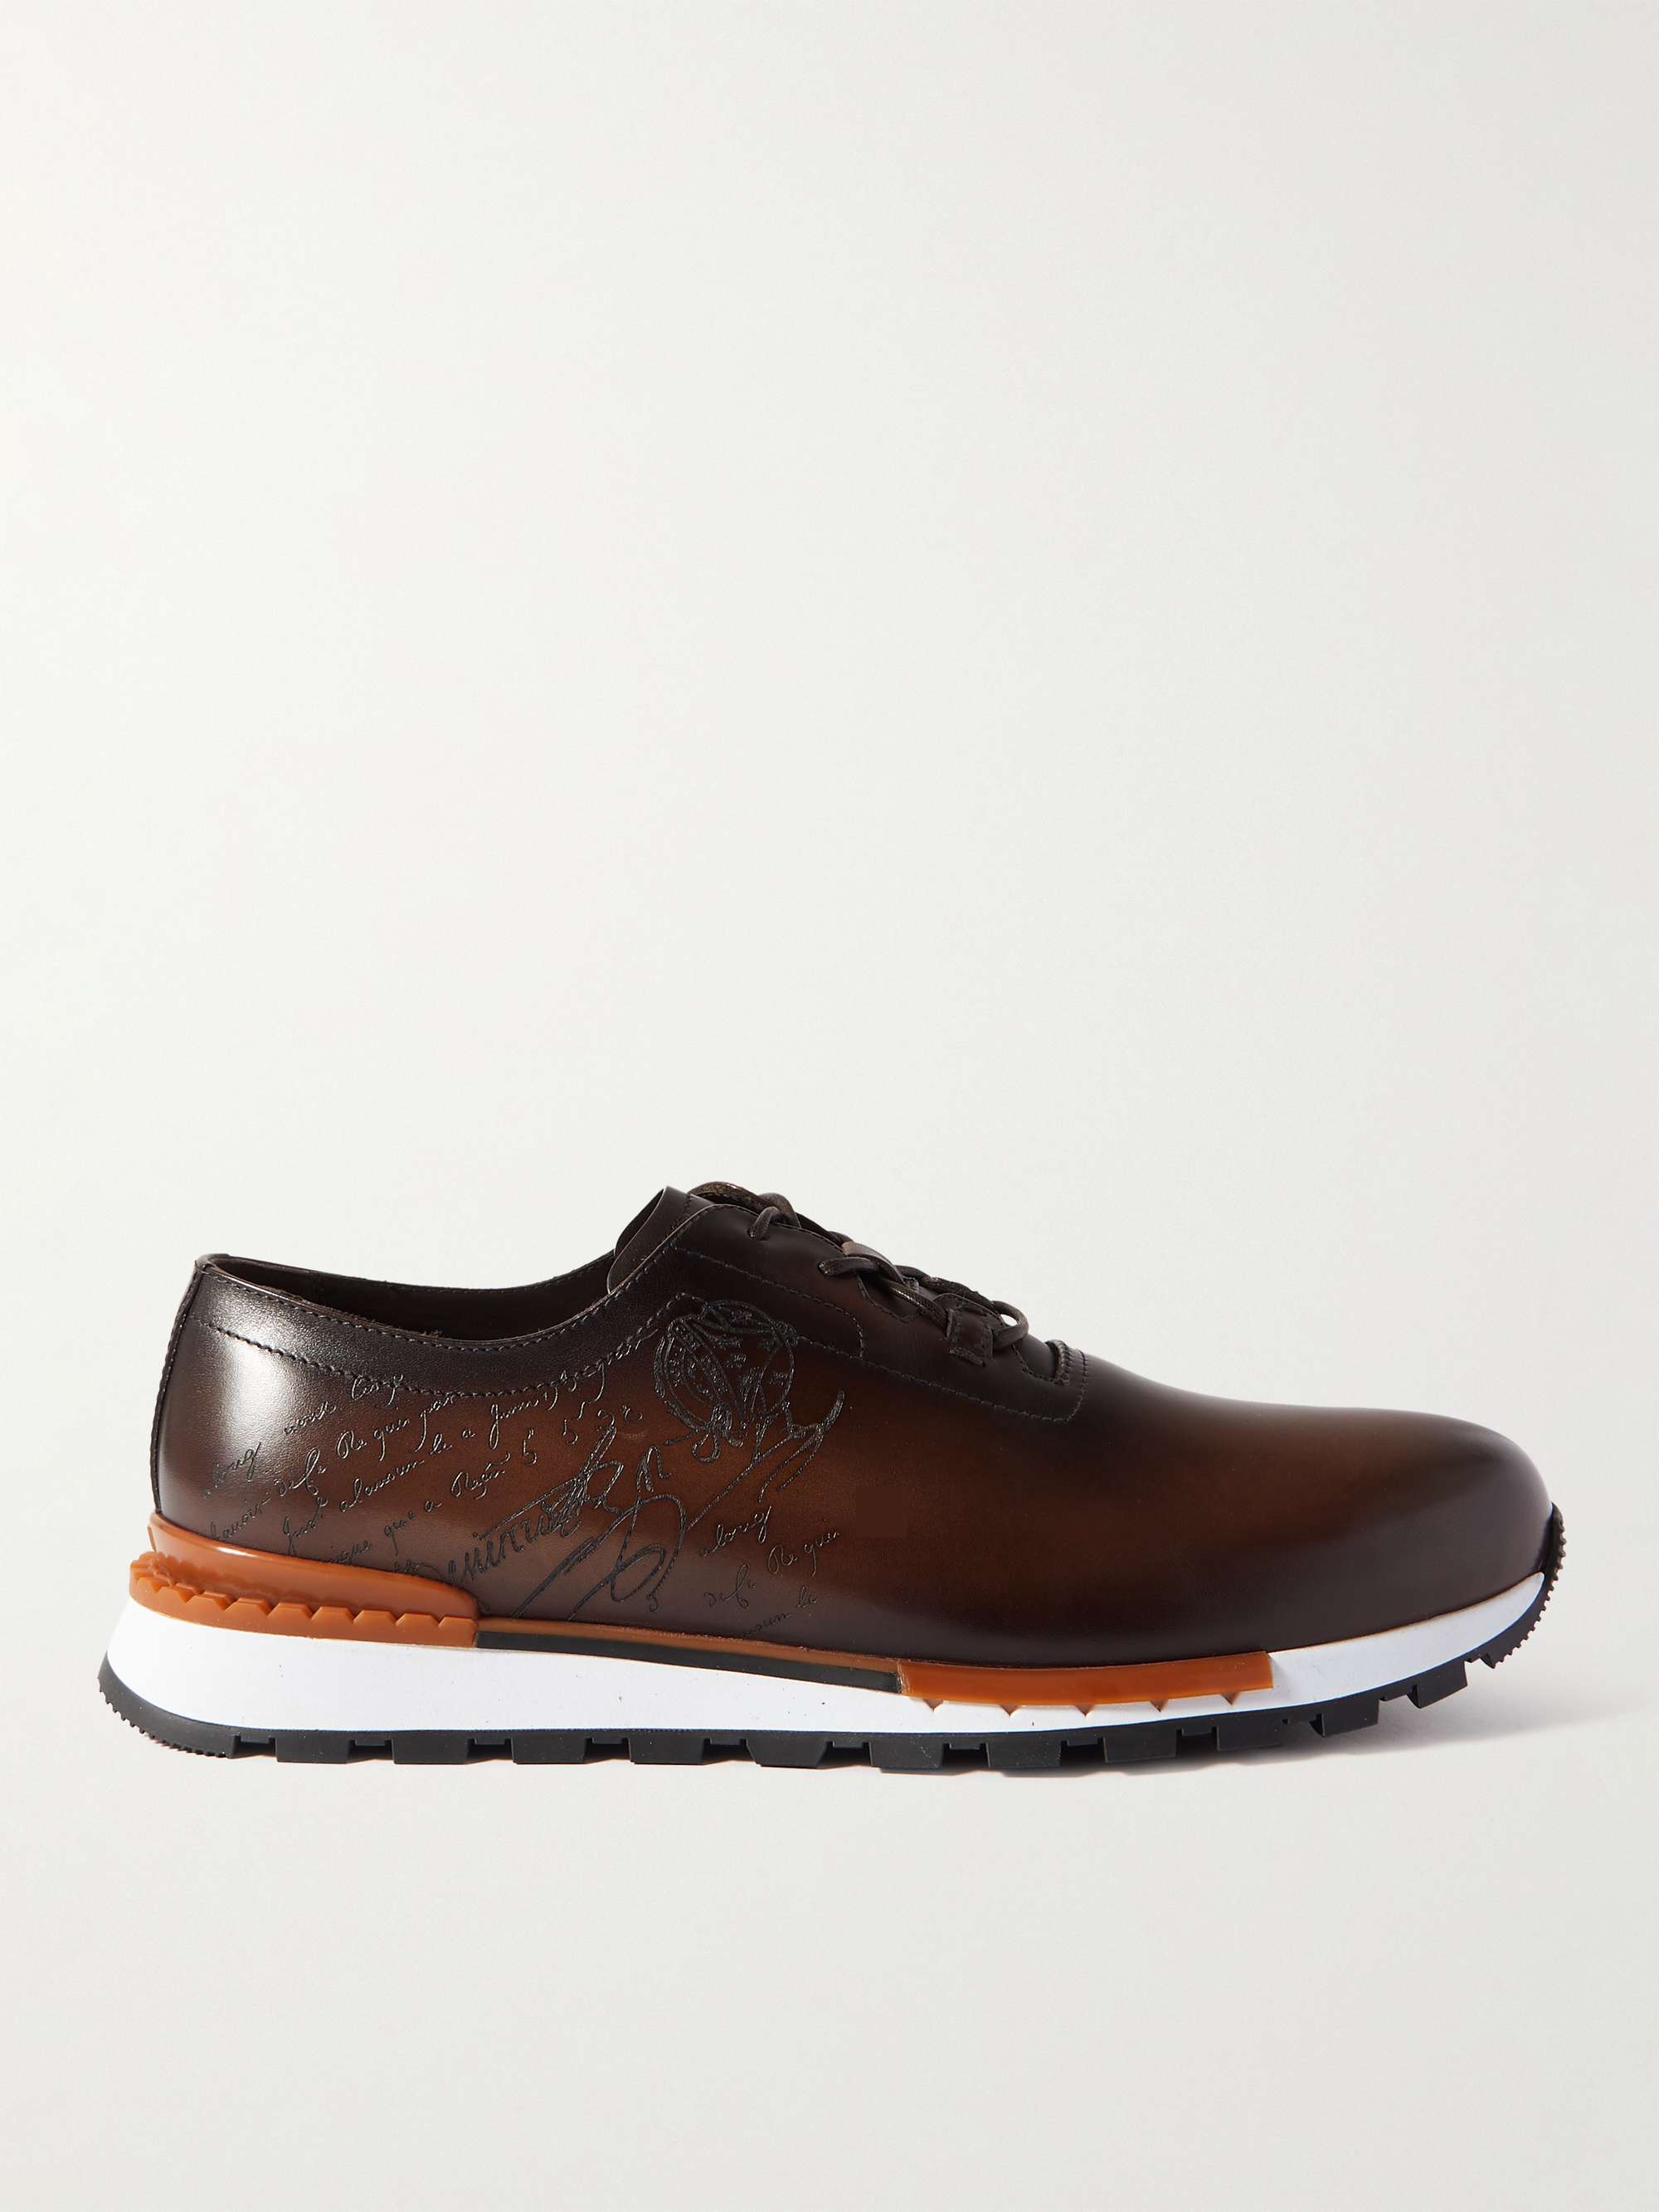 Berluti - Men - Fast Track Scritto Venezia Leather Sneakers Brown - UK 8.5